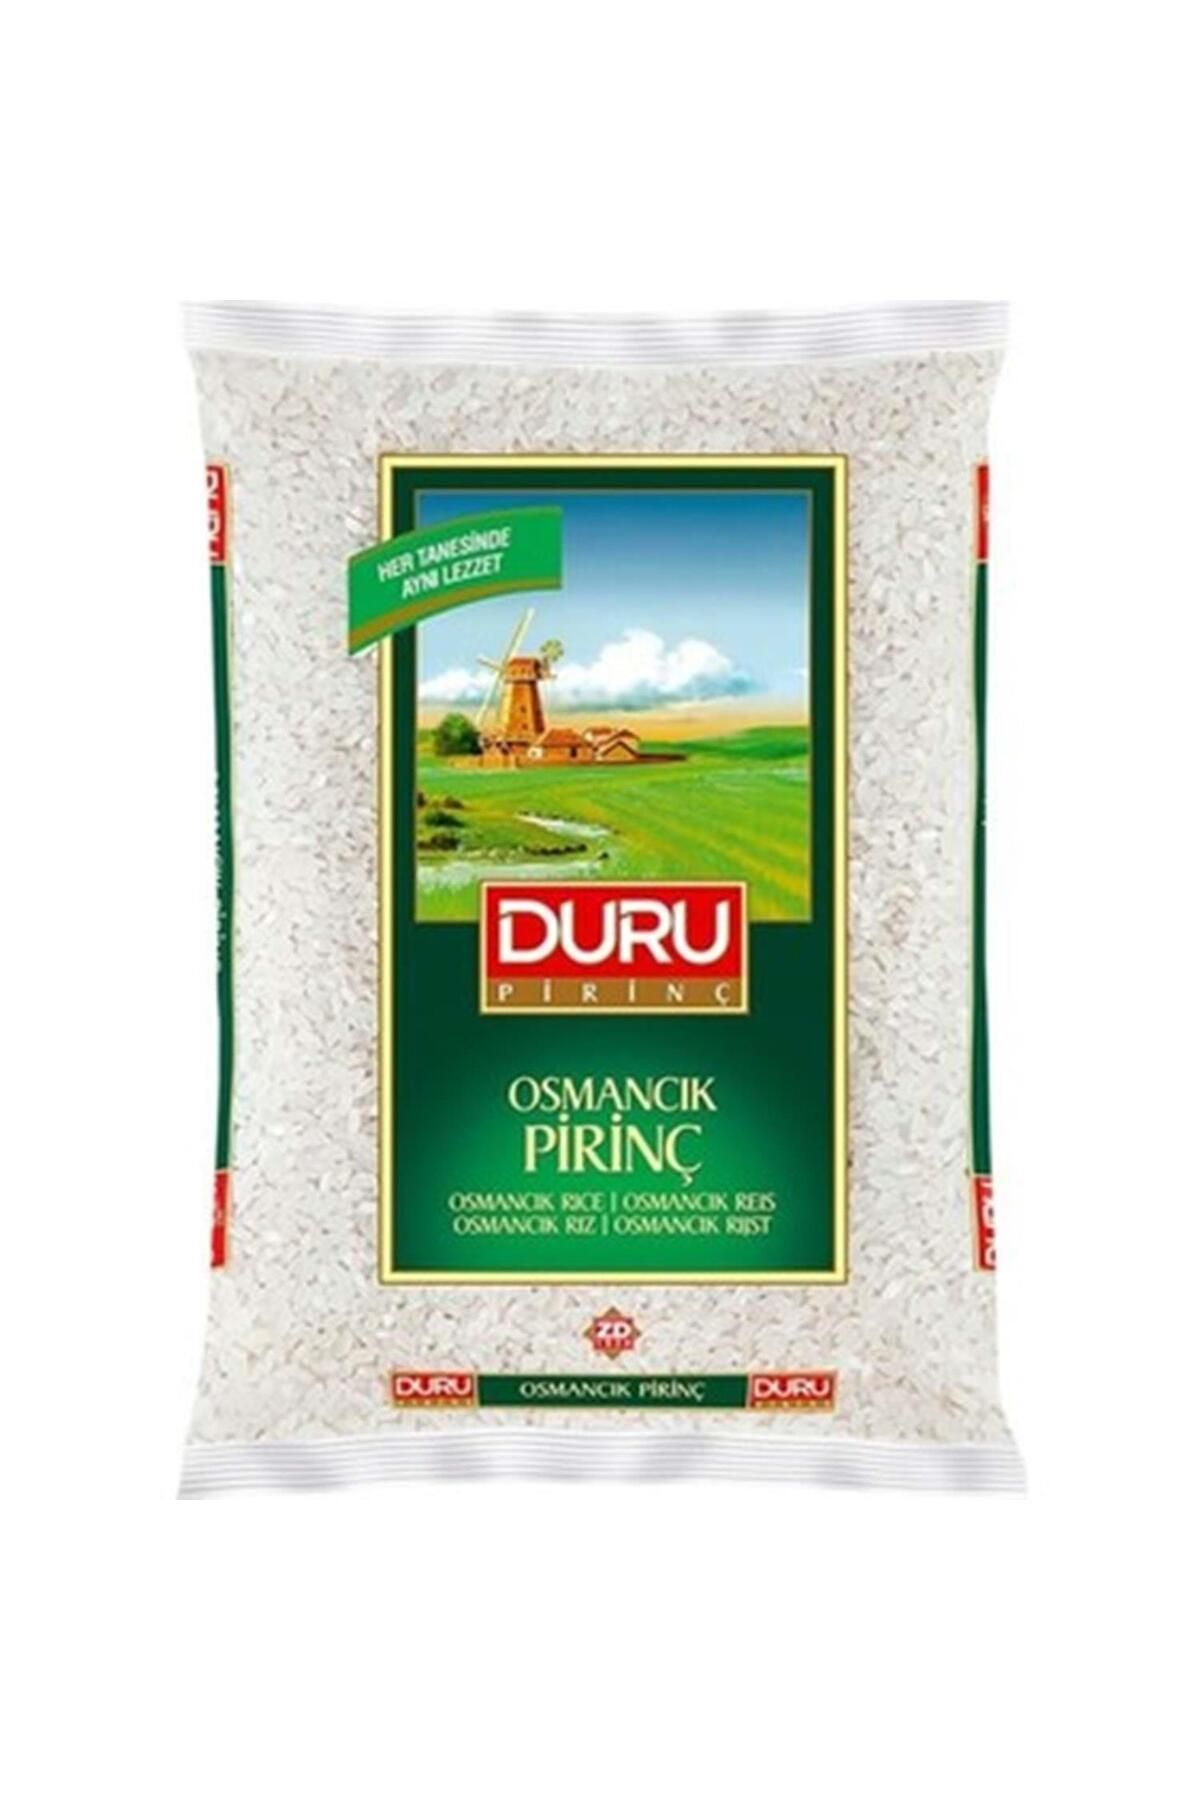 Duru Osmancık Pirinç 2000 Gr. (24'LÜ)